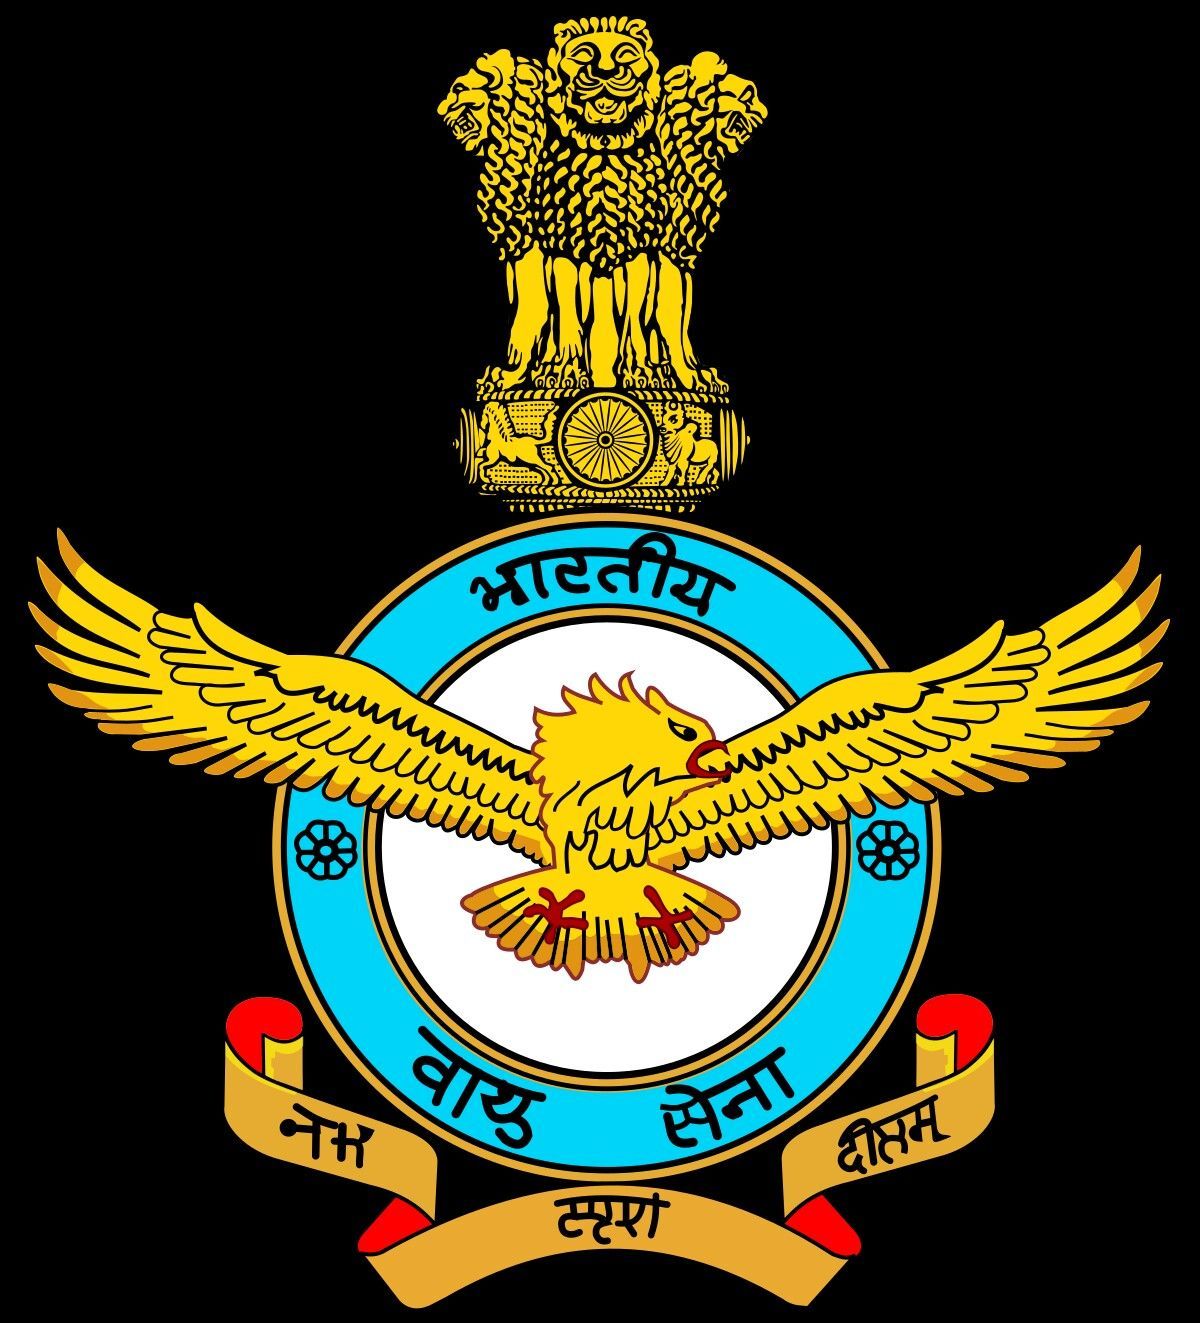 Indian air force. Indian air force, Air force wallpaper, Air